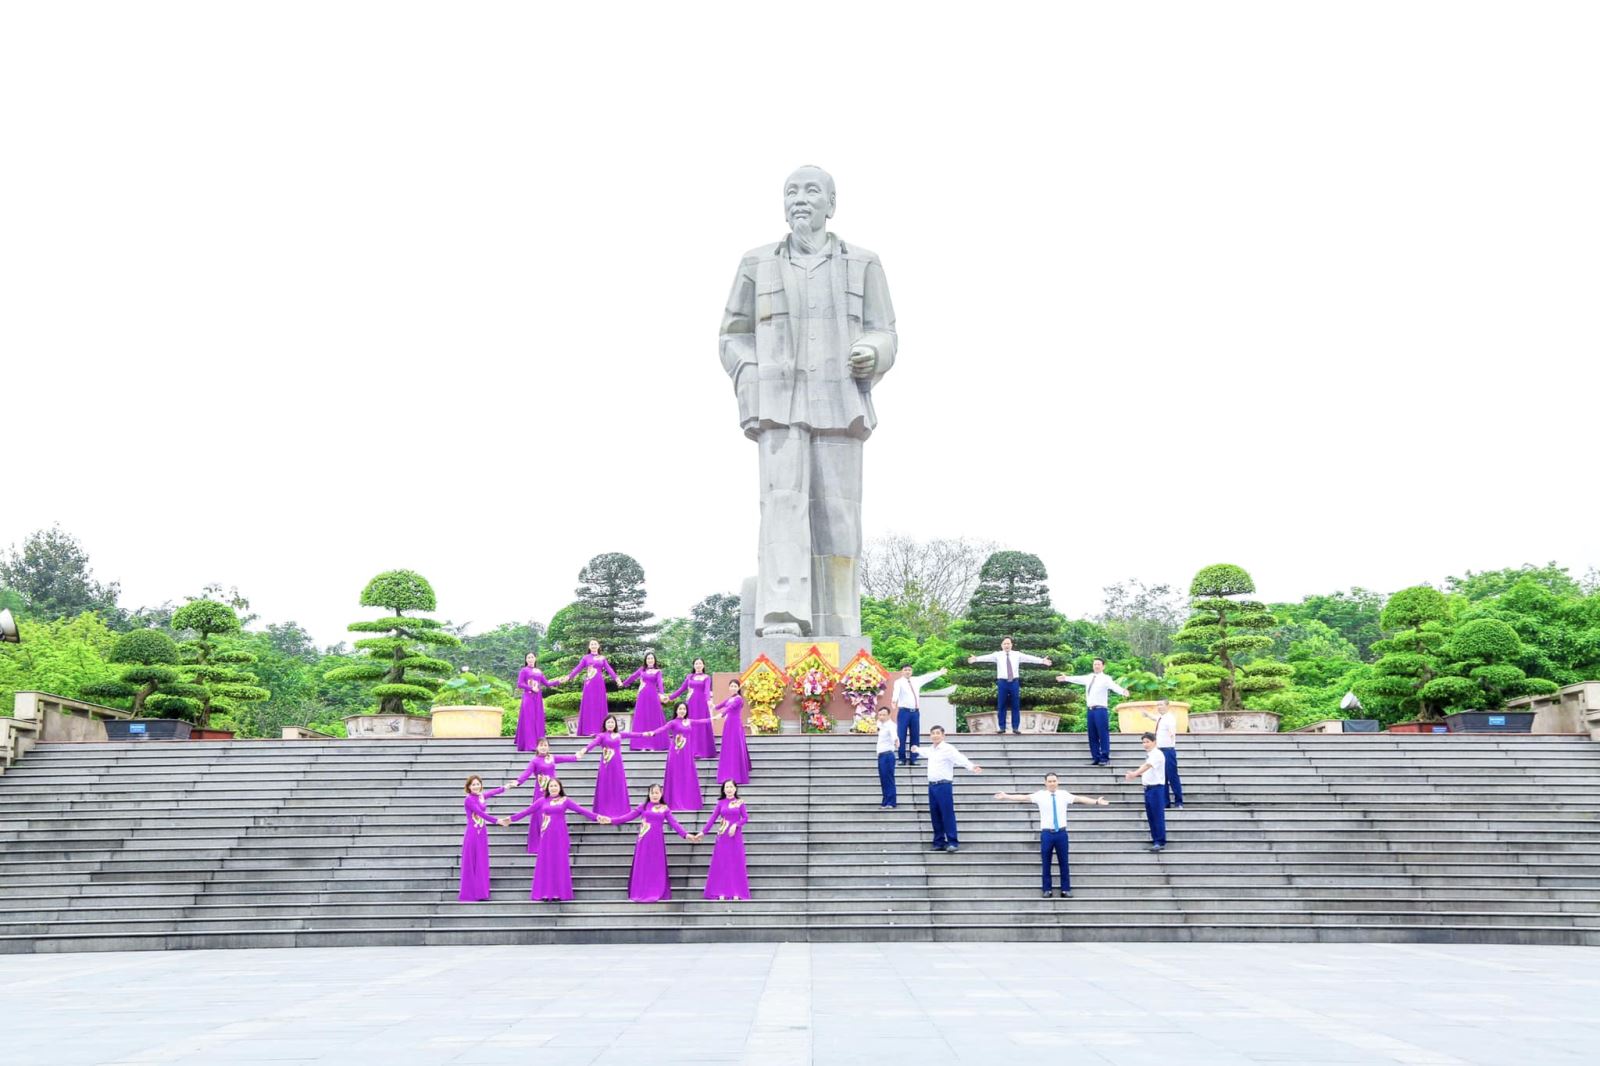 Lễ dâng hoa, dâng hương, báo công, tưởng niệm Chủ tịch Hồ Chí Minh nhân dịp Kỉ niệm 20 năm thành lập đơn vị (10/4/2003 - 10/4/2023) và trước thềm tổ chức kỉ niệm 20 năm hình thành và phát triển Quảng trường Hồ Chí Minh & Tượng đài Bác Hồ